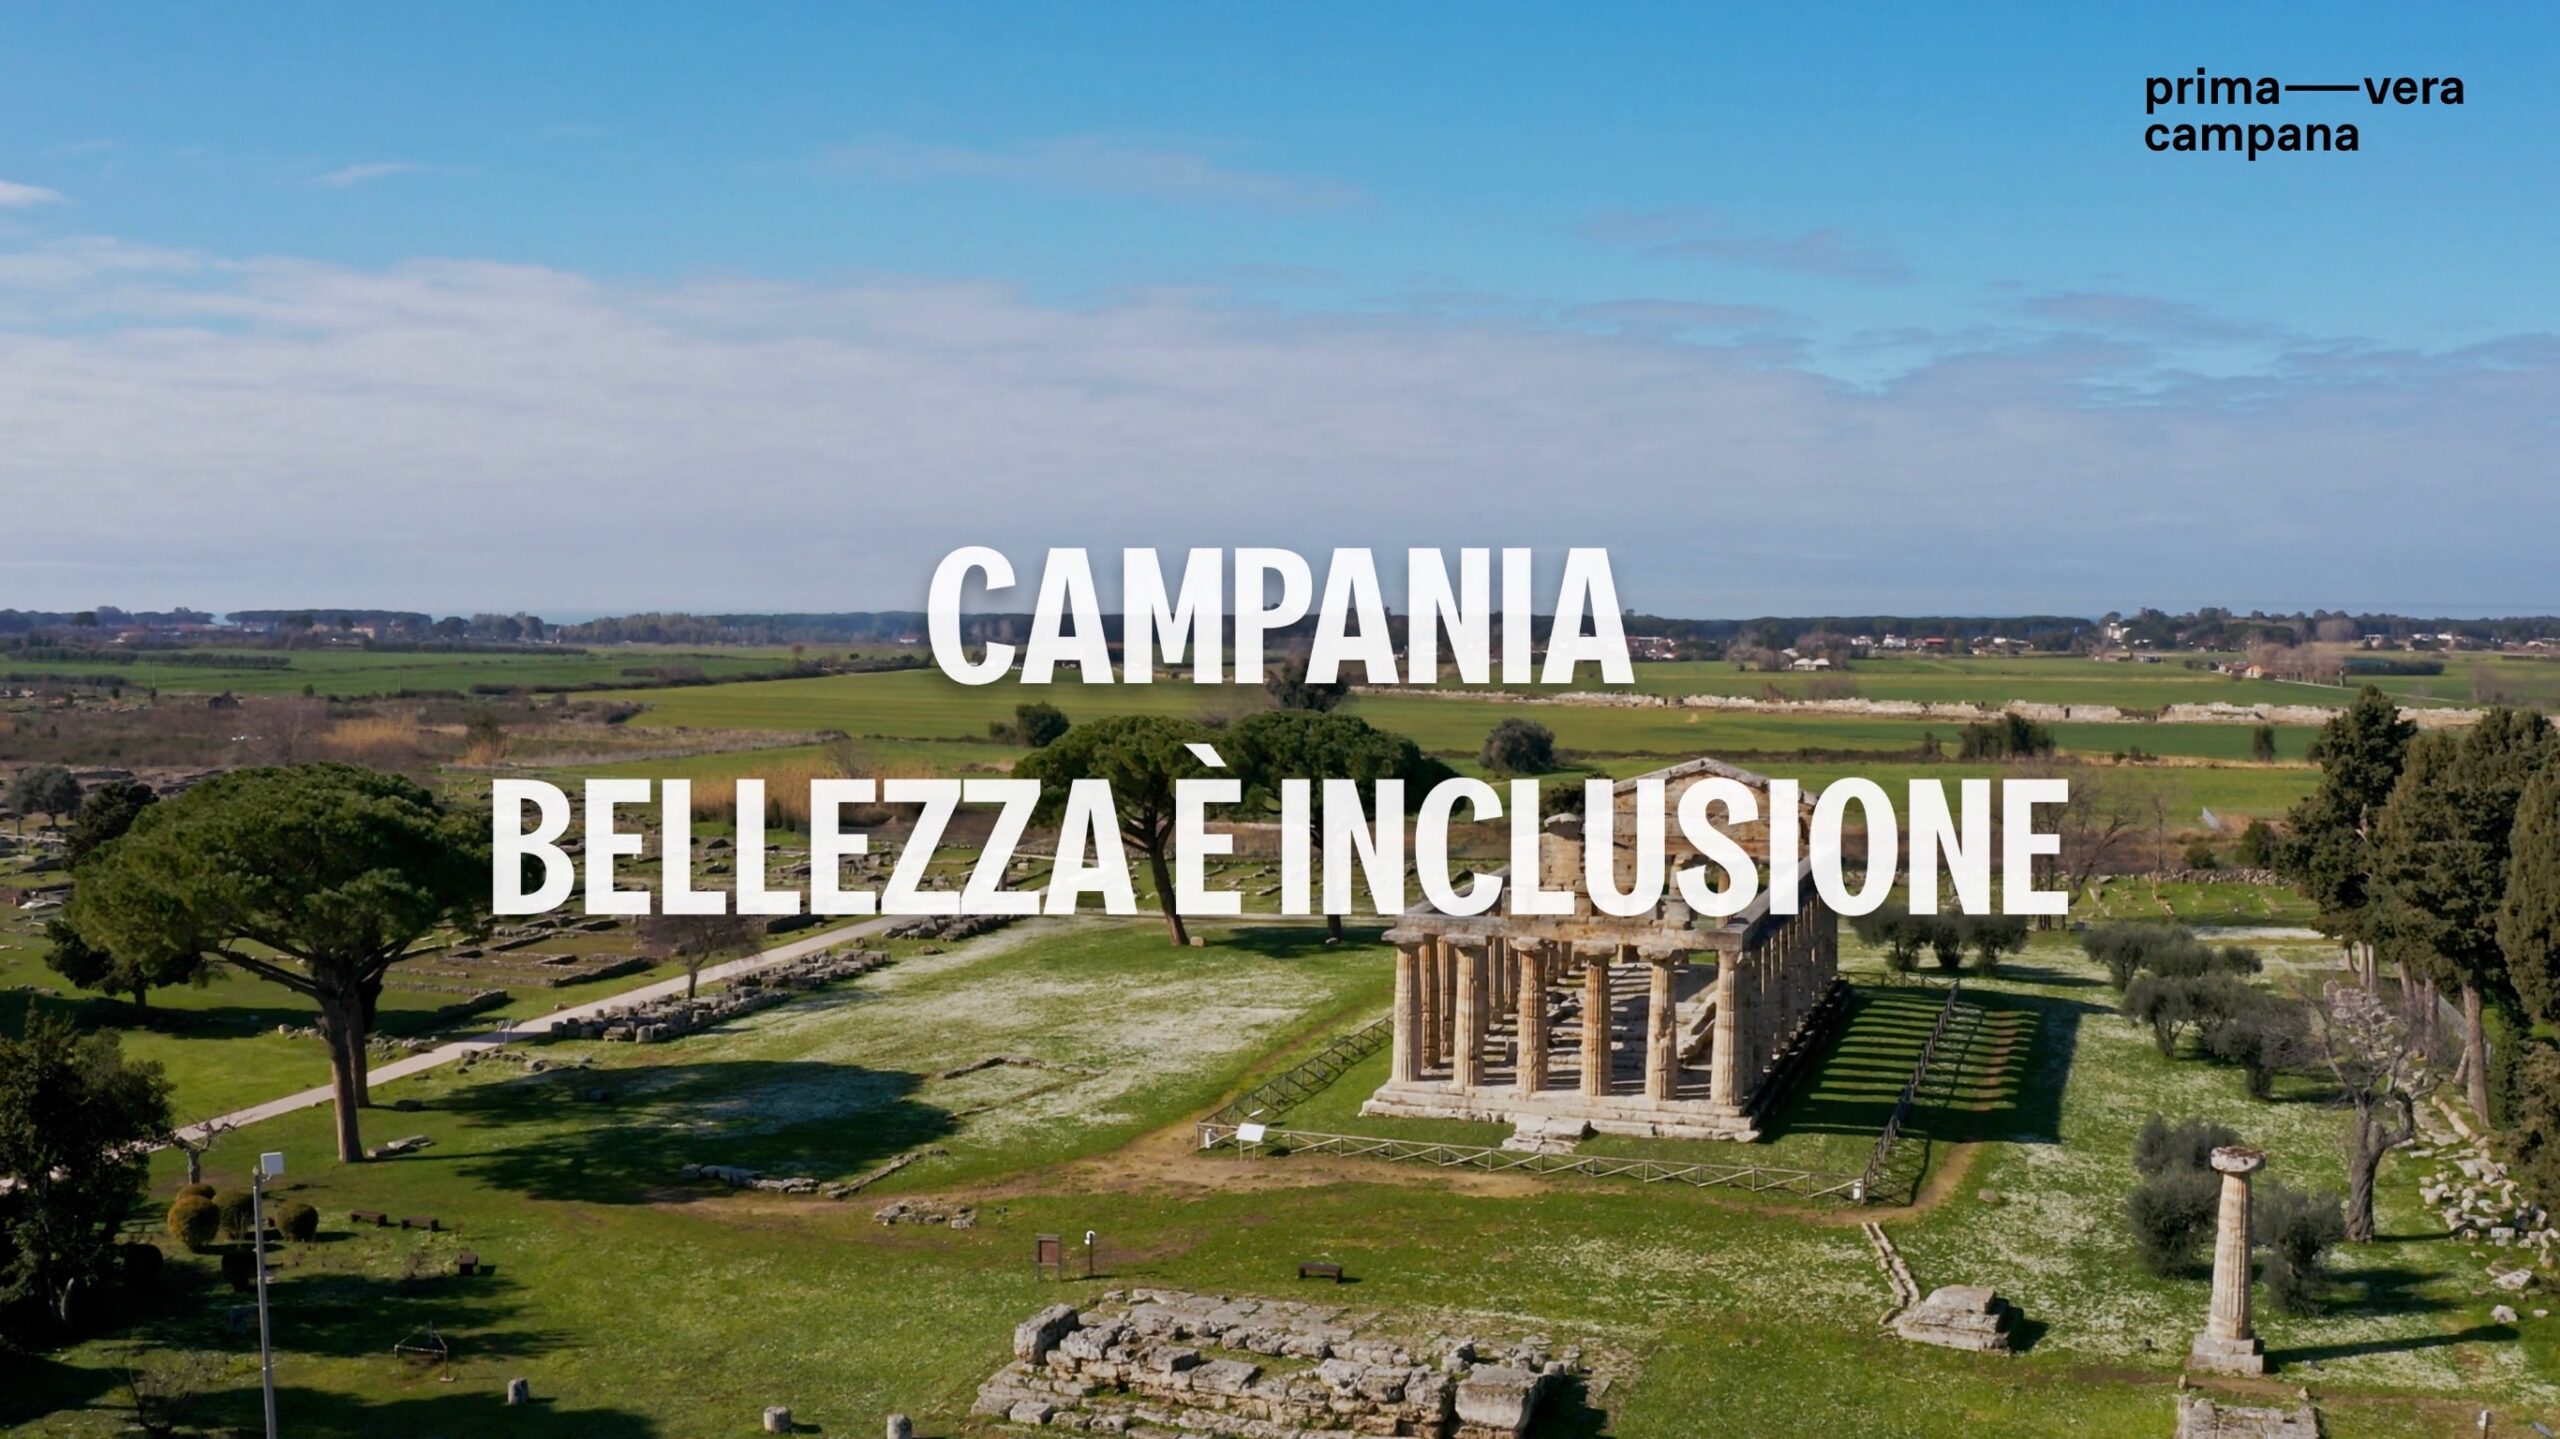 Regione Campania: “Campania: bellezza è inclusione”, nuovo video per integrazione stranieri  